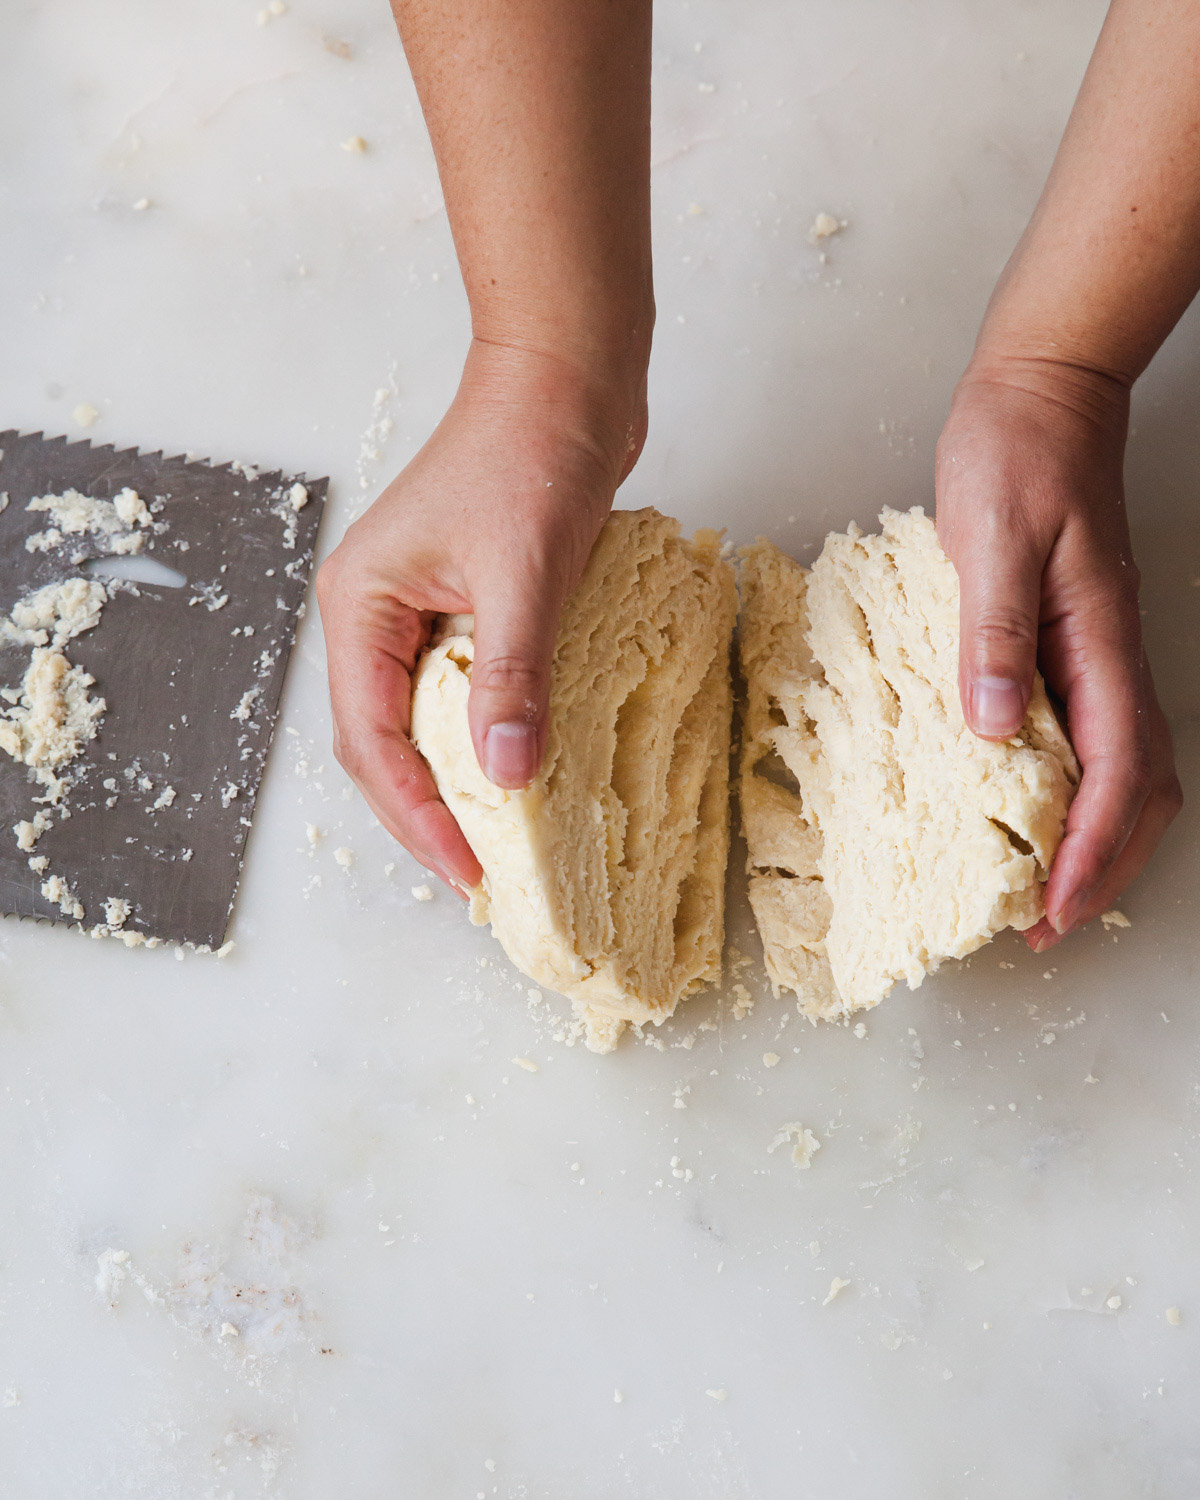 splitting a pie dough recipe in half